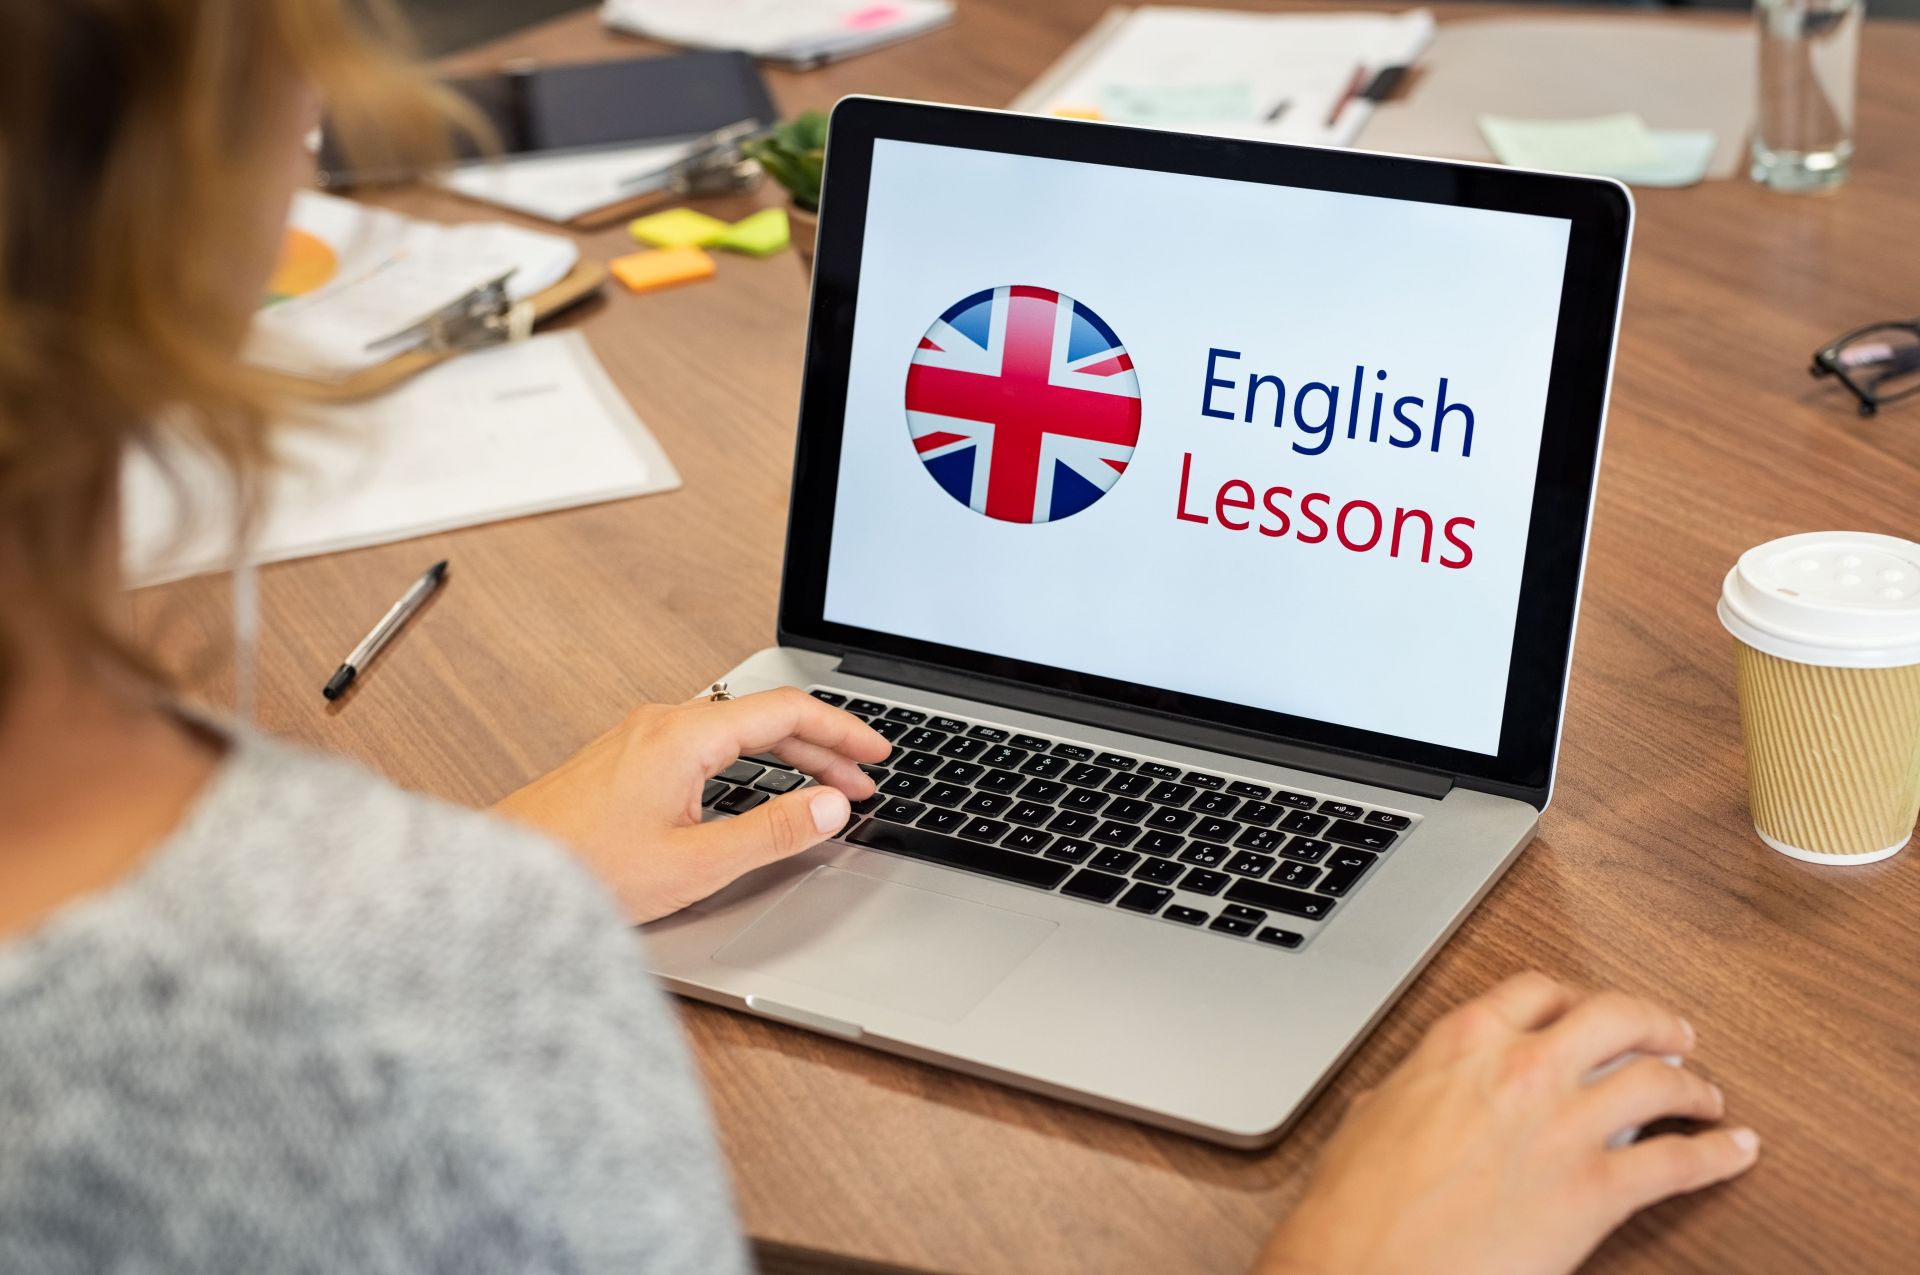 online ingilizce özel ders ile yüz yüze ingilizce özel ders arasındaki fark nedir?